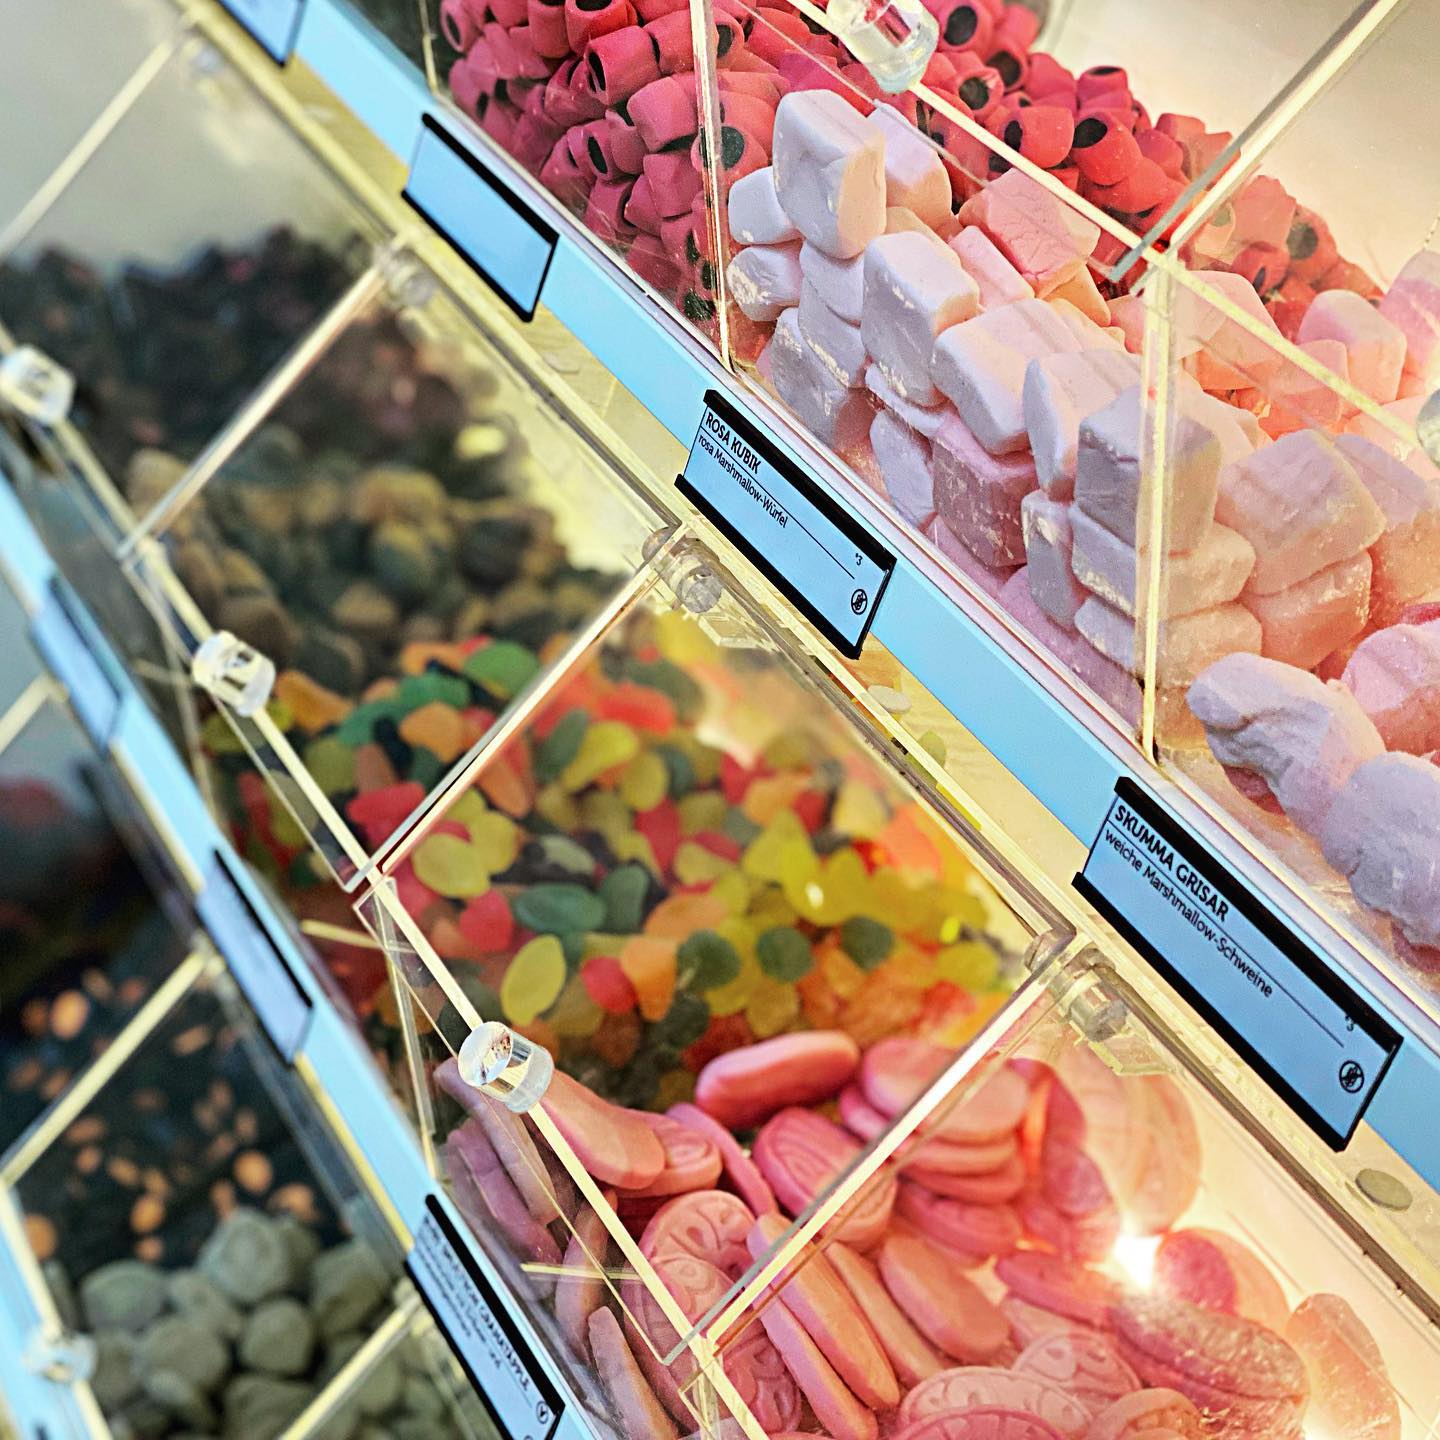 Naschhaus - Dein neuer Lieblingsladen für außergewöhnliche Süßigkeiten aus Skandinavien in Berlin-Friedrichshain 11